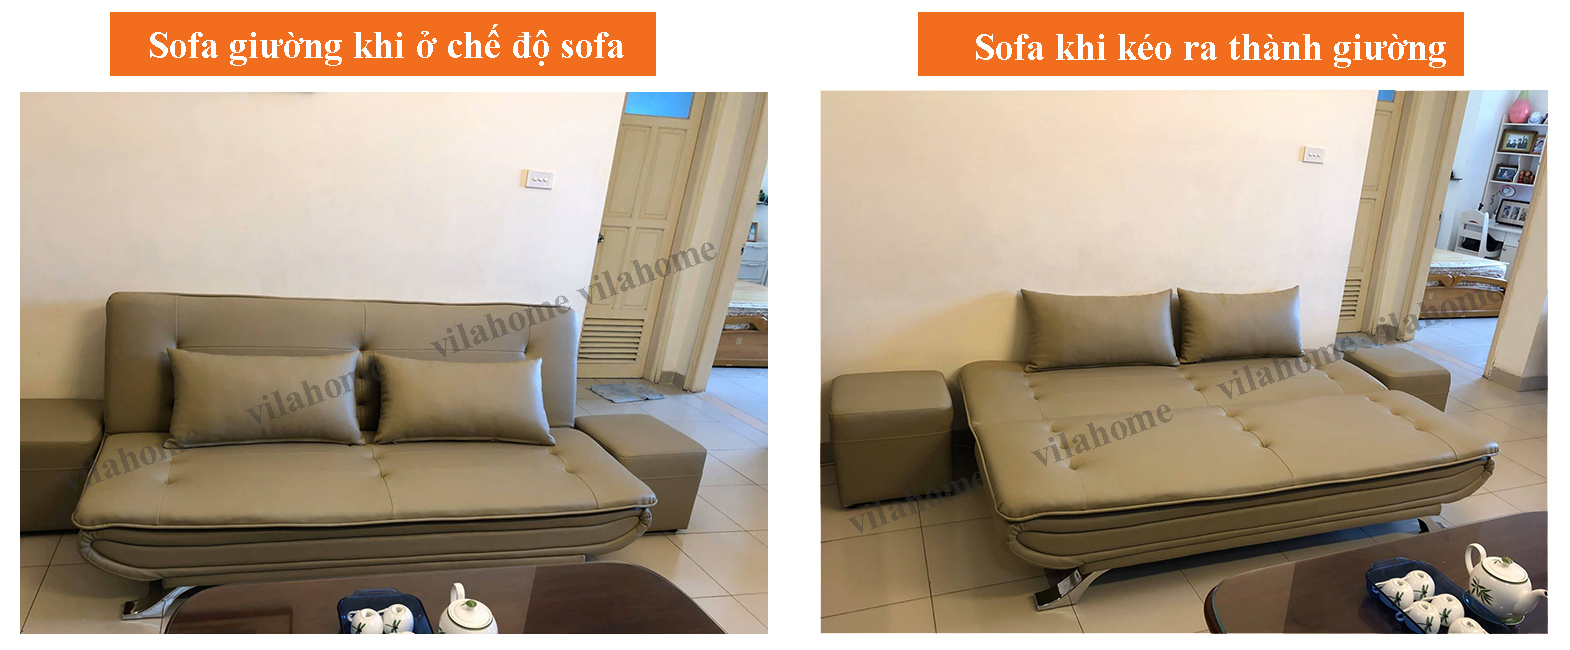 Sofa giường ở Hà Nội